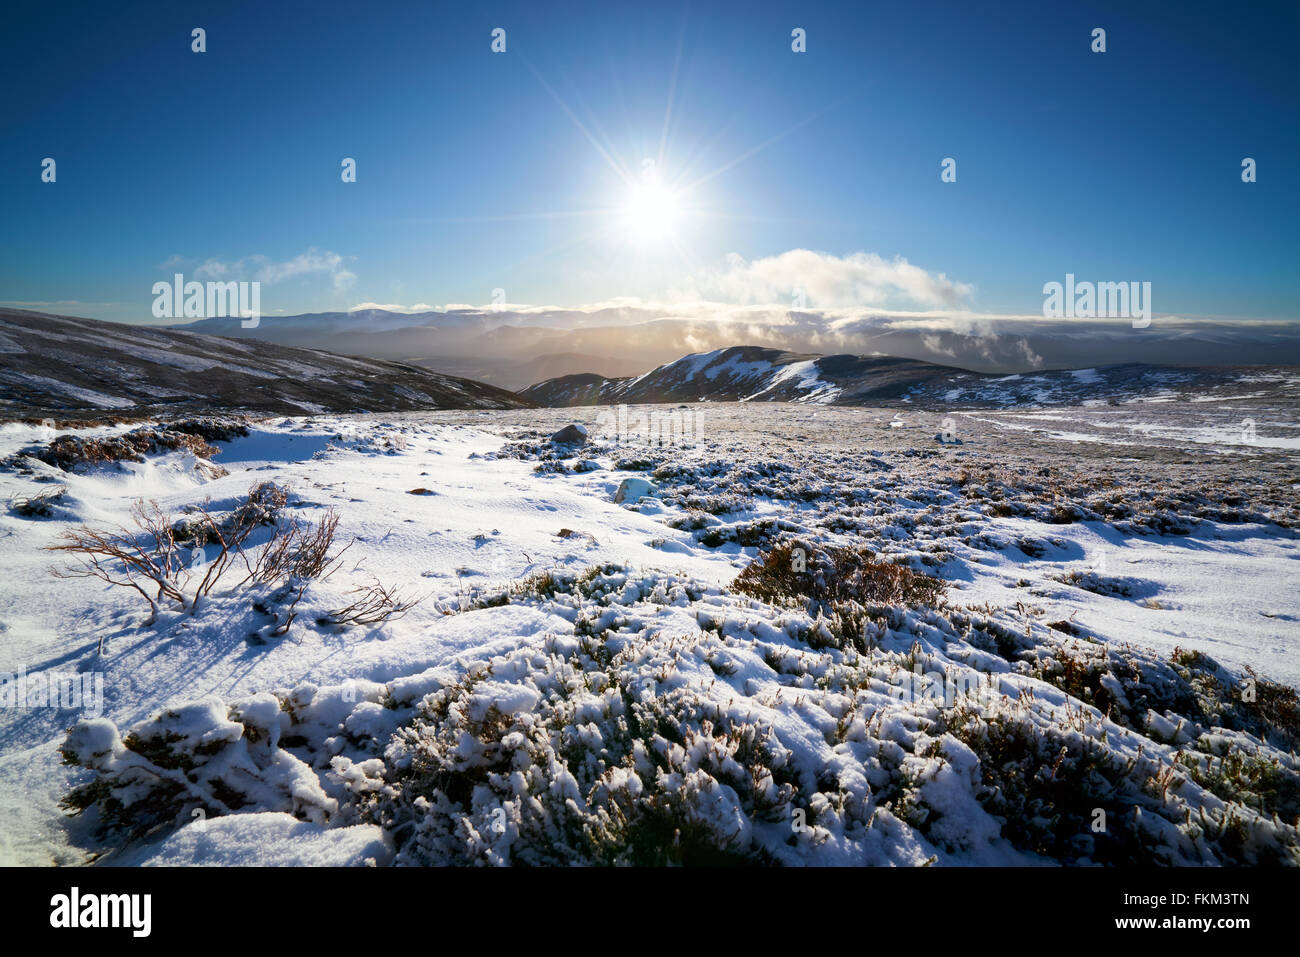 Schauen unten An Gleannan auf dem Weg zum Gipfel des Geal Charn Mor in der Cairngorms, die schottischen Highlands, UK. Stockfoto